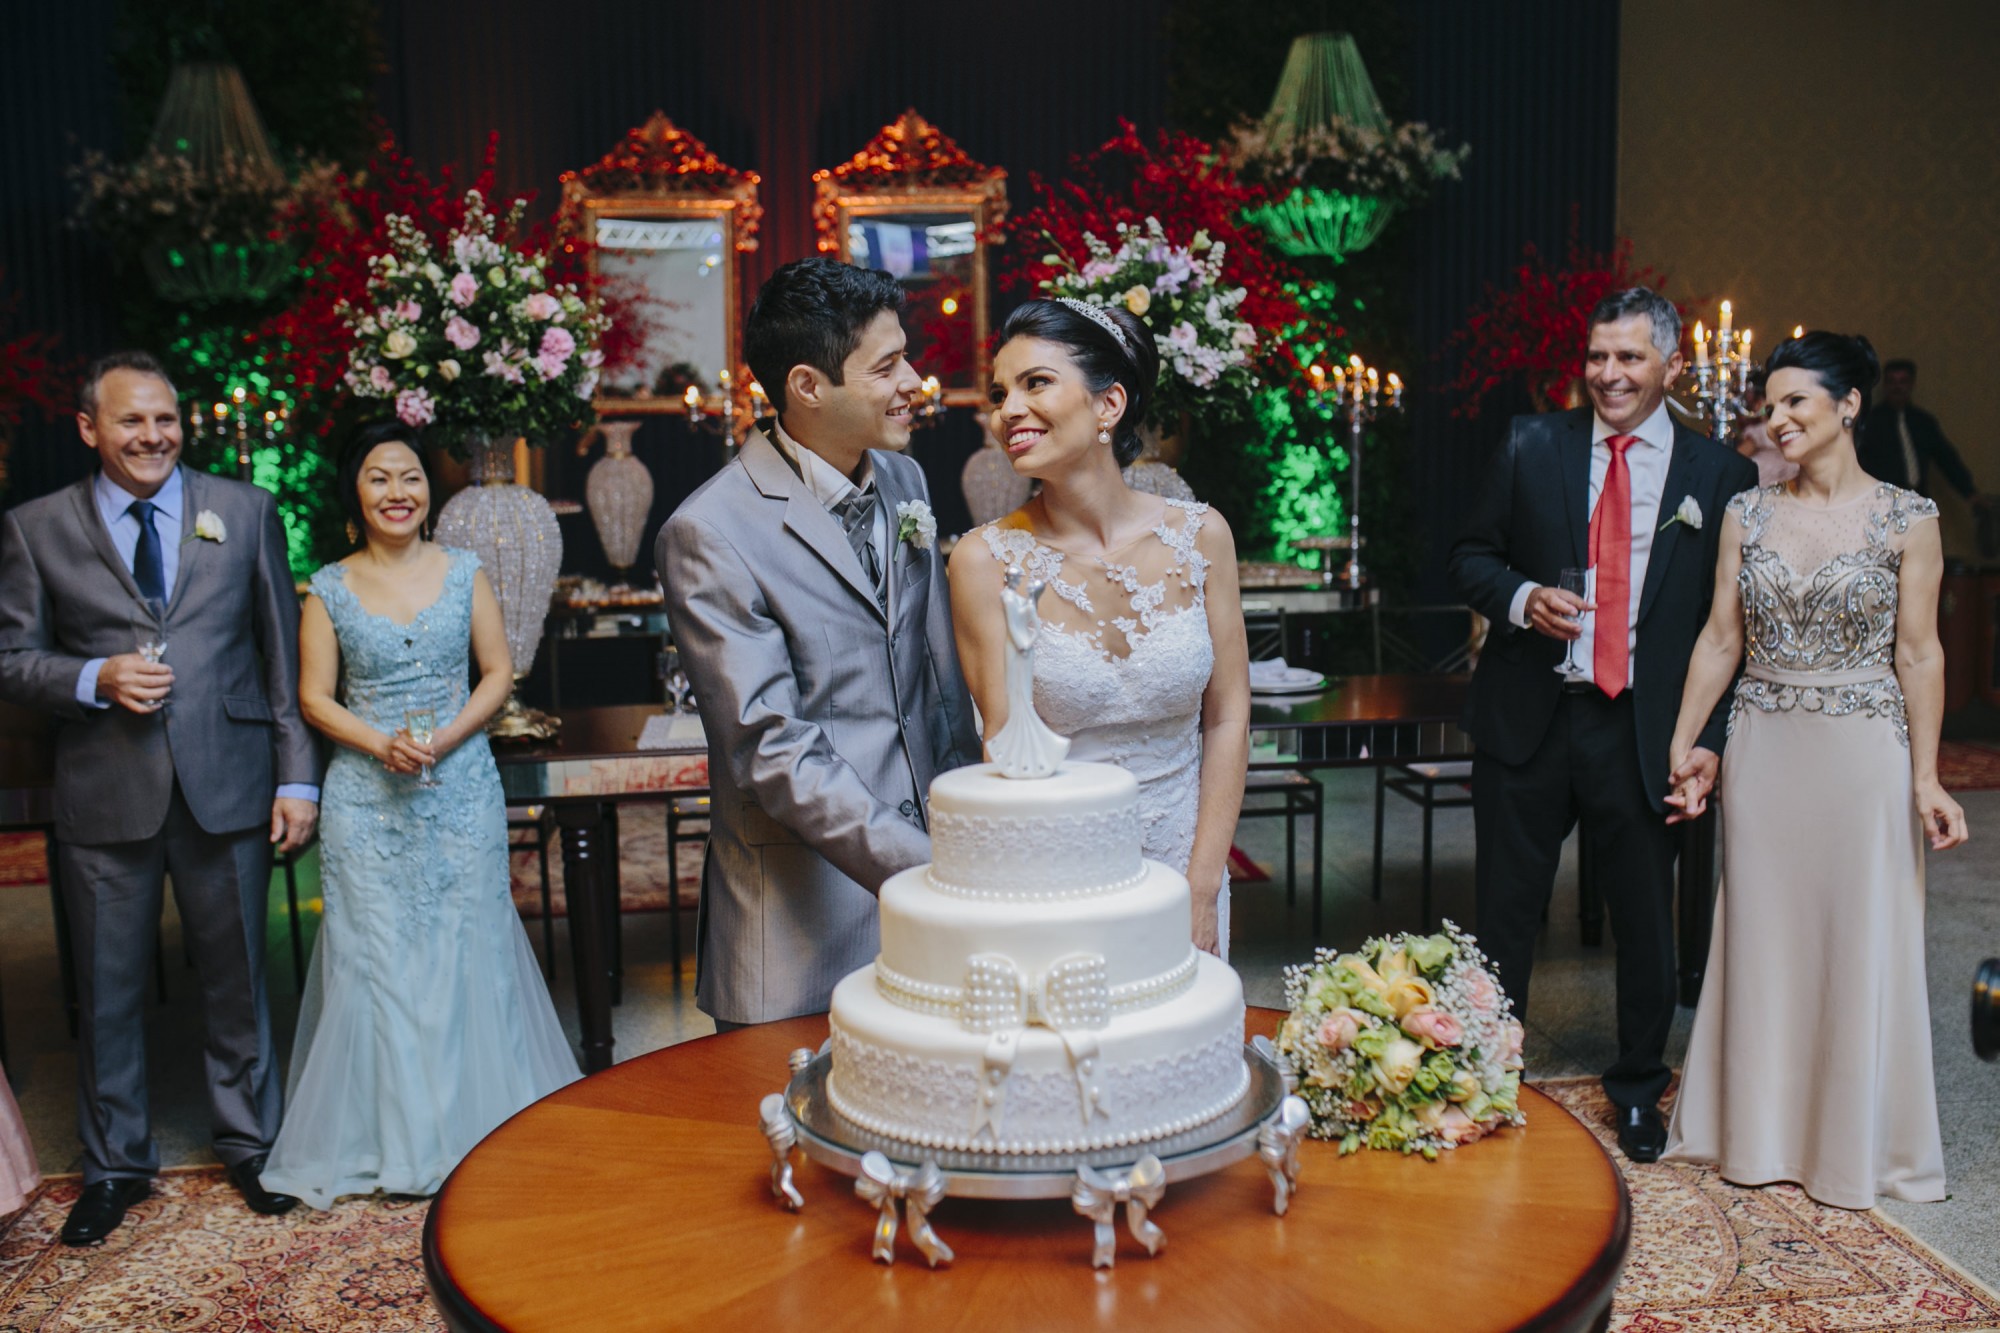 Casamento Camila Rampim e Rafael em Terra Roxa - Paraná - por Lorran Souza e Léia Sotile - fotografos de casamentos - 59